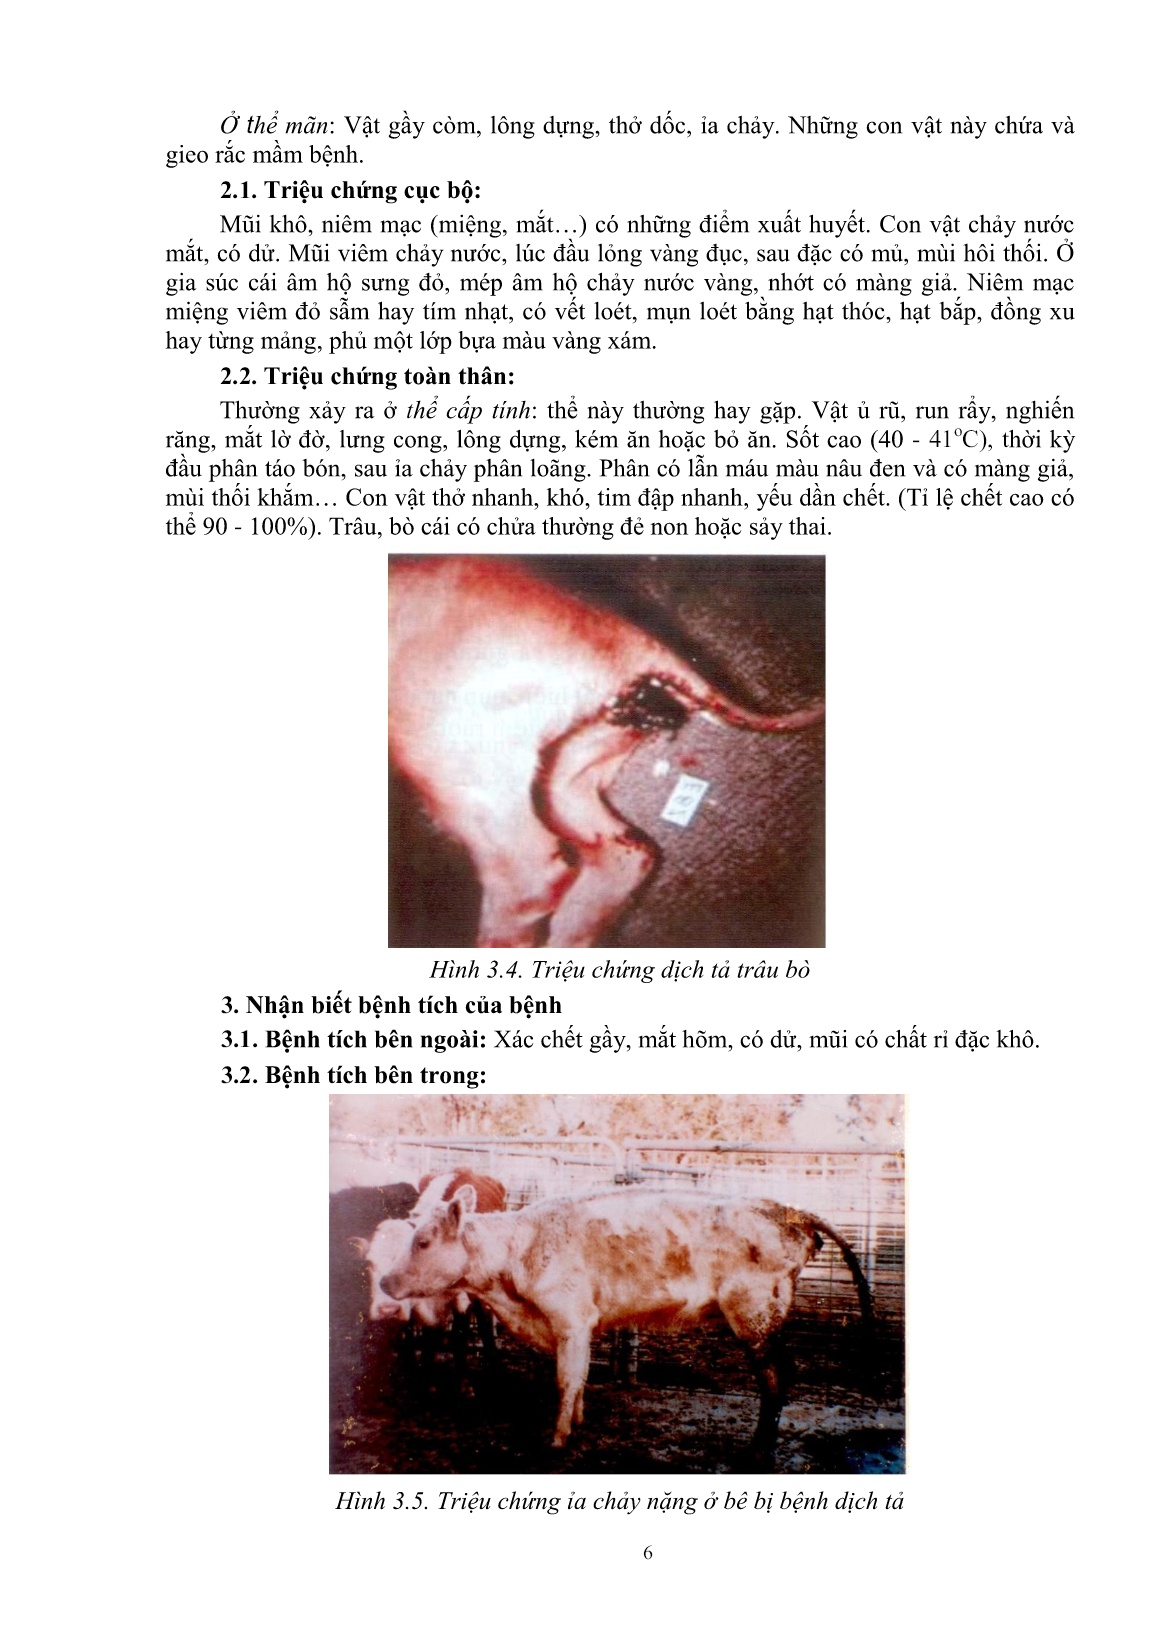 Giáo trình mô đun Phòng và trị bệnh cho trâu, bò (Trình độ: Đào tạo dưới 3 tháng) trang 8